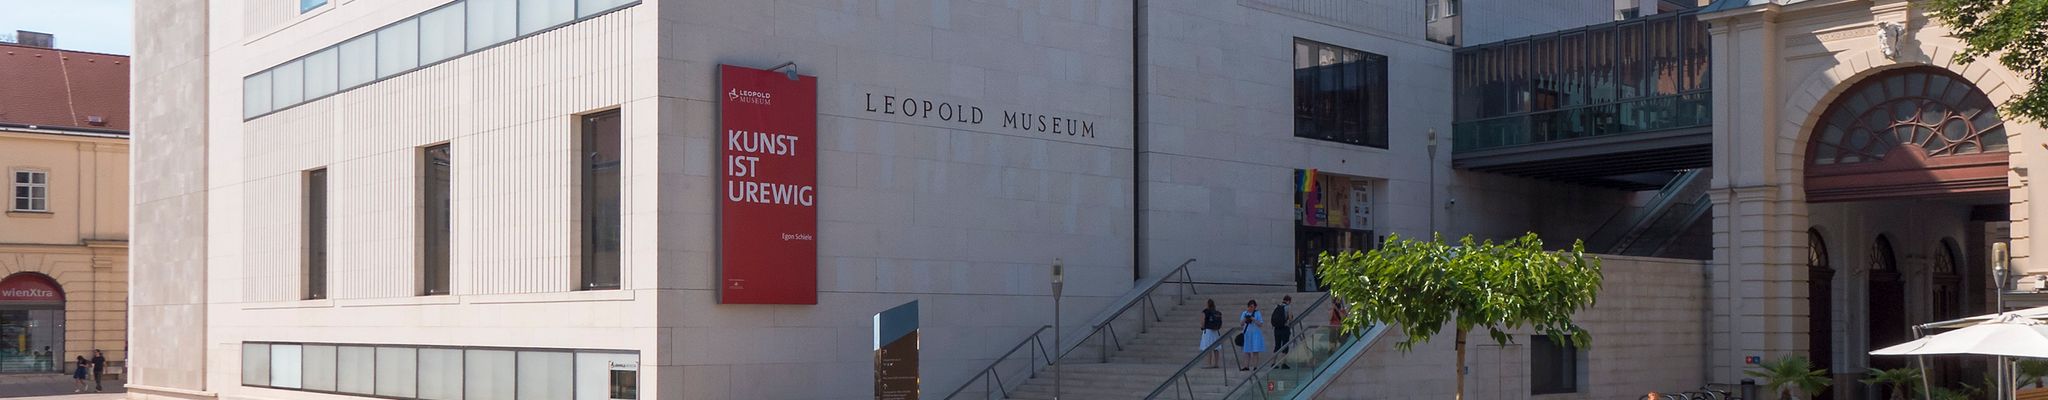 Musée Leopold